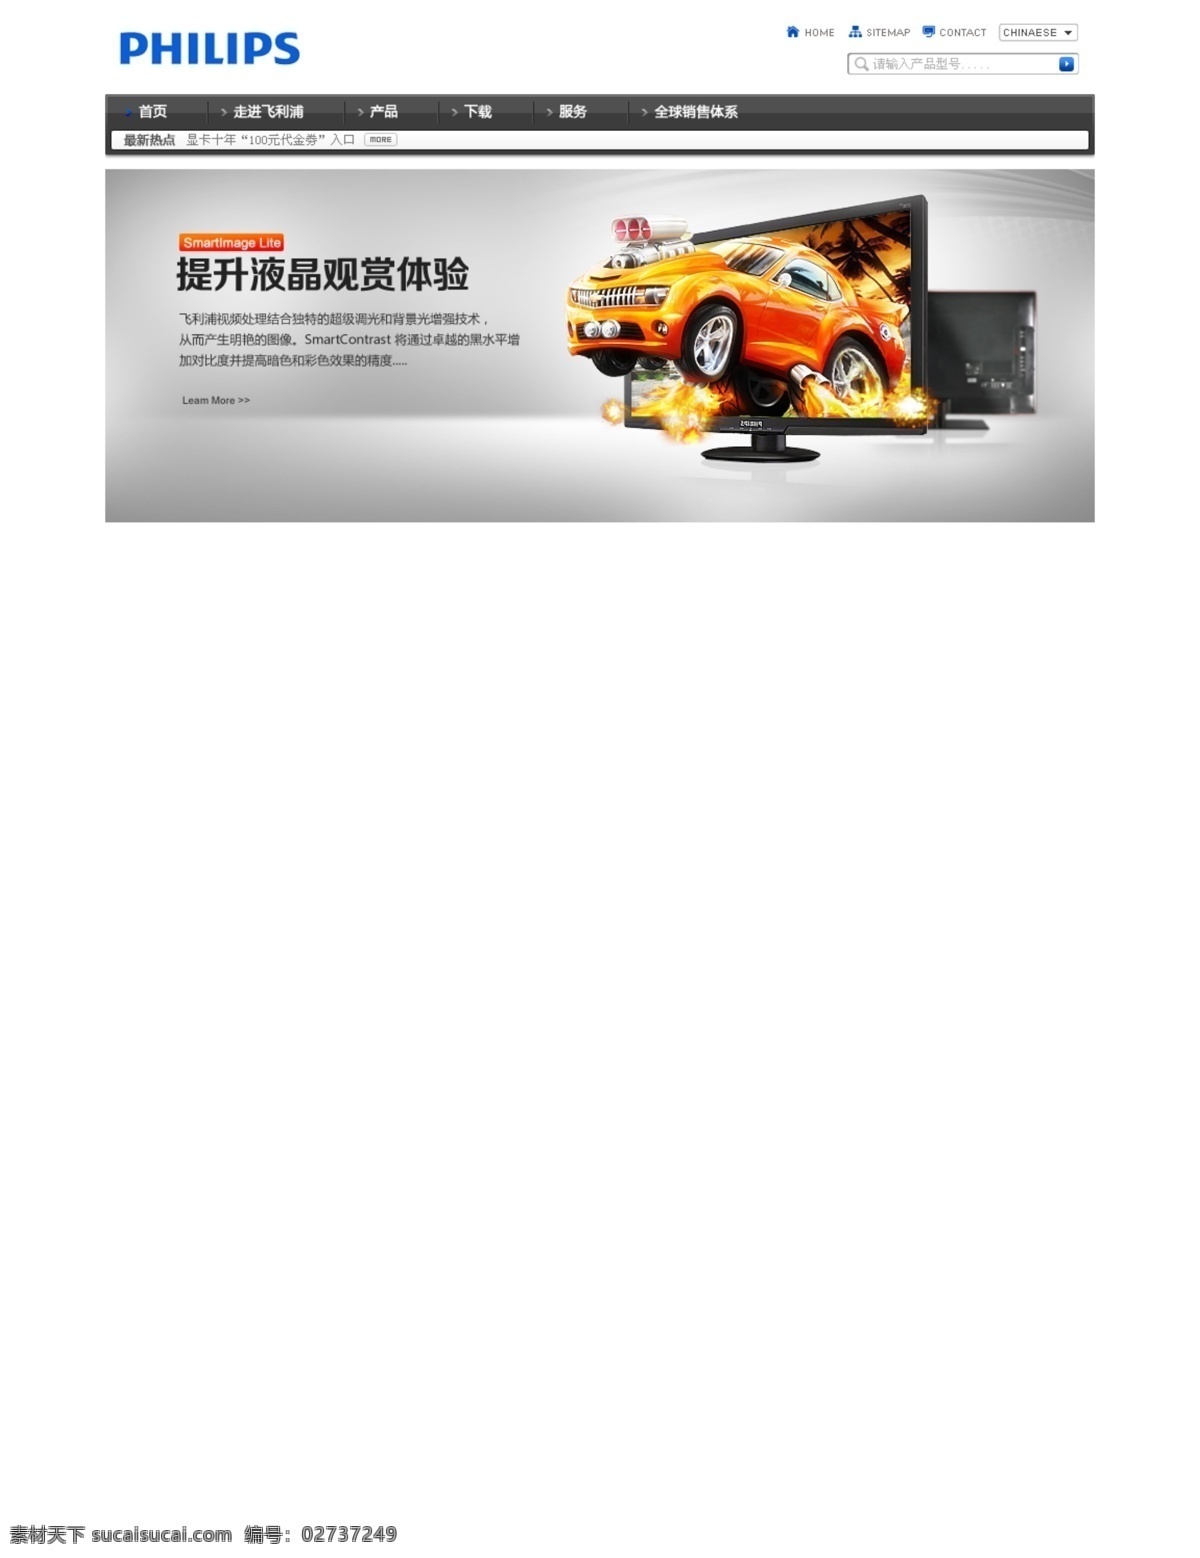 3d 电视机 飞利浦 灰色 火焰 模板 网页 banner 模板下载 中文模板 网页模板 源文件 网页素材